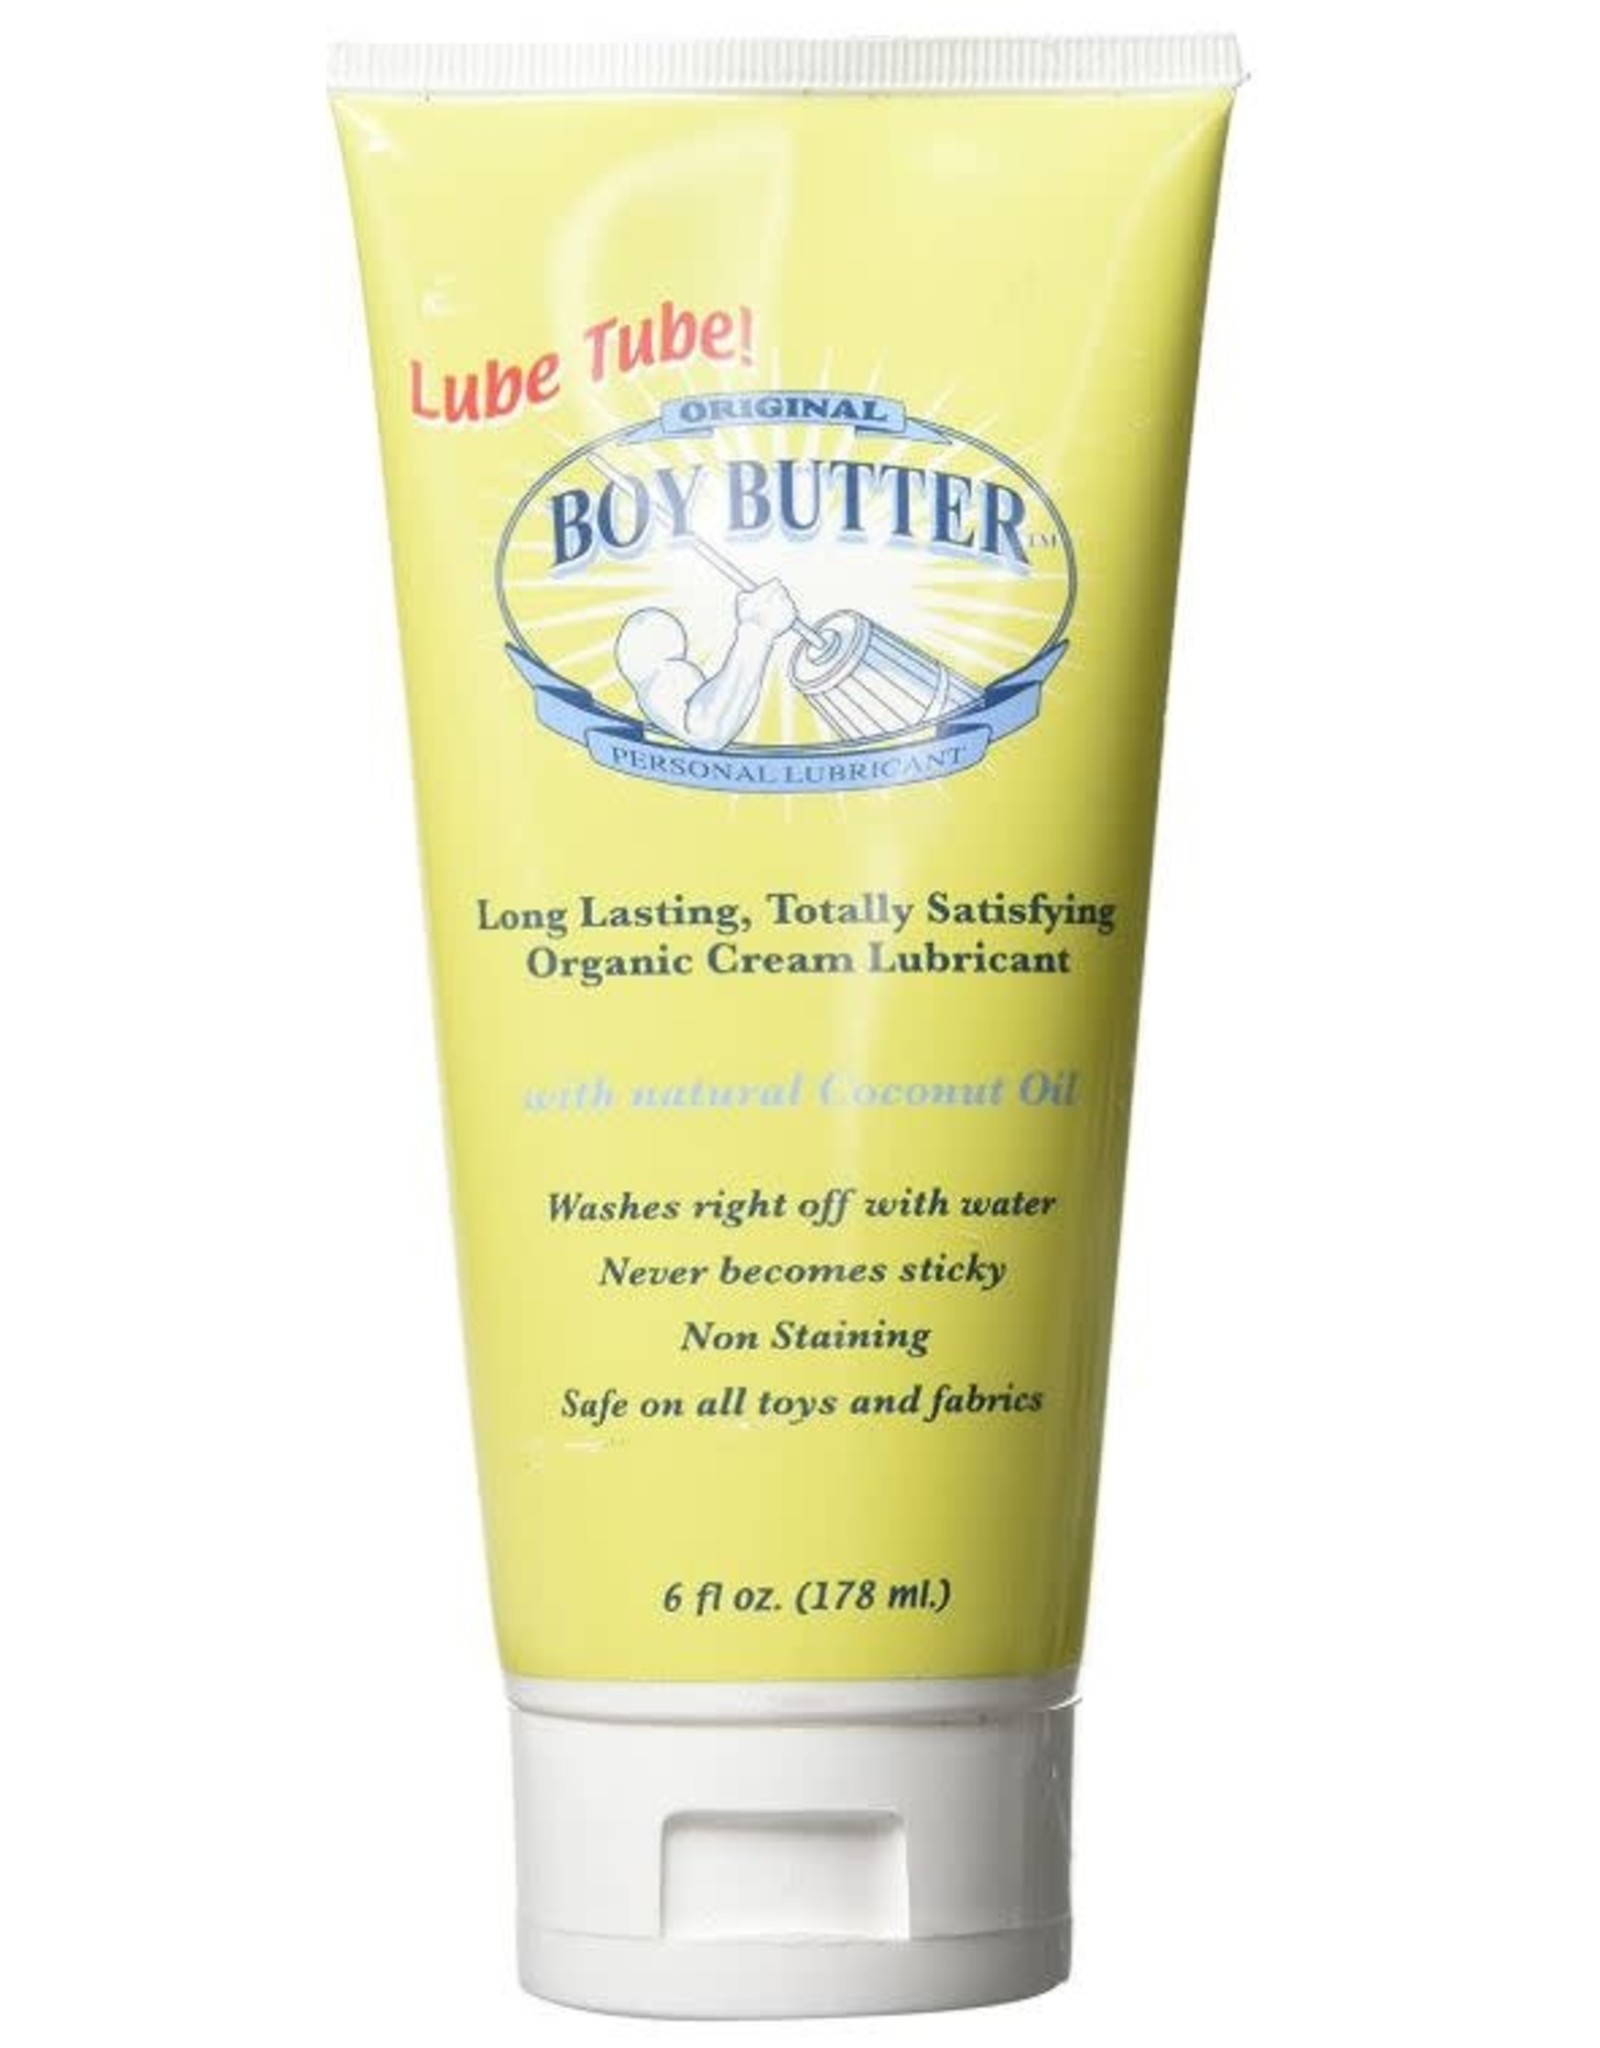 https://cdn.shoplightspeed.com/shops/630102/files/21995705/1600x2048x2/boy-butter-boy-butter-original.jpg